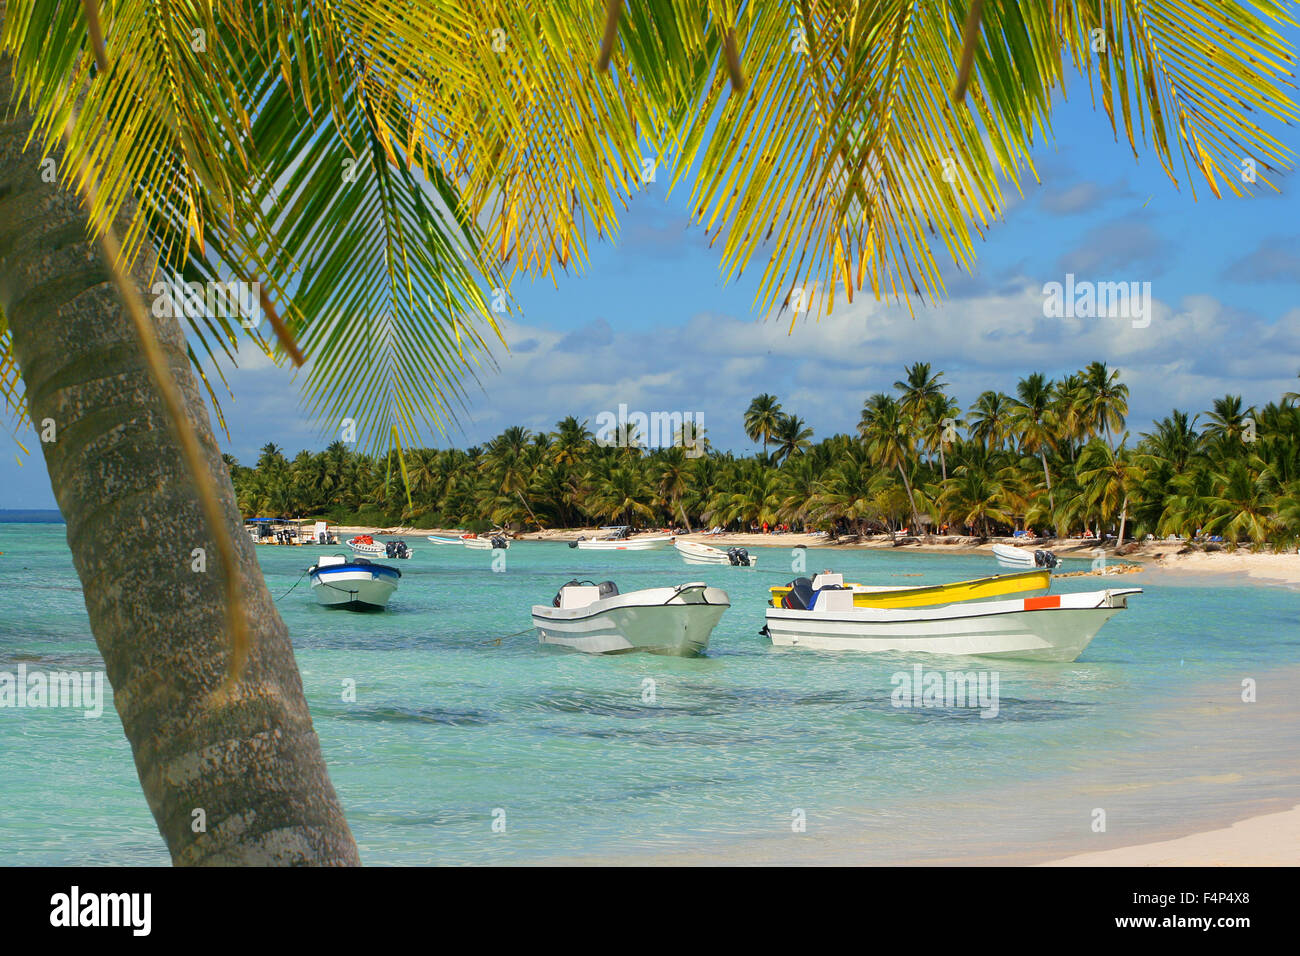 Isola Seona spiaggia tropicale con barche, palme e limpide acque dei Caraibi Foto Stock